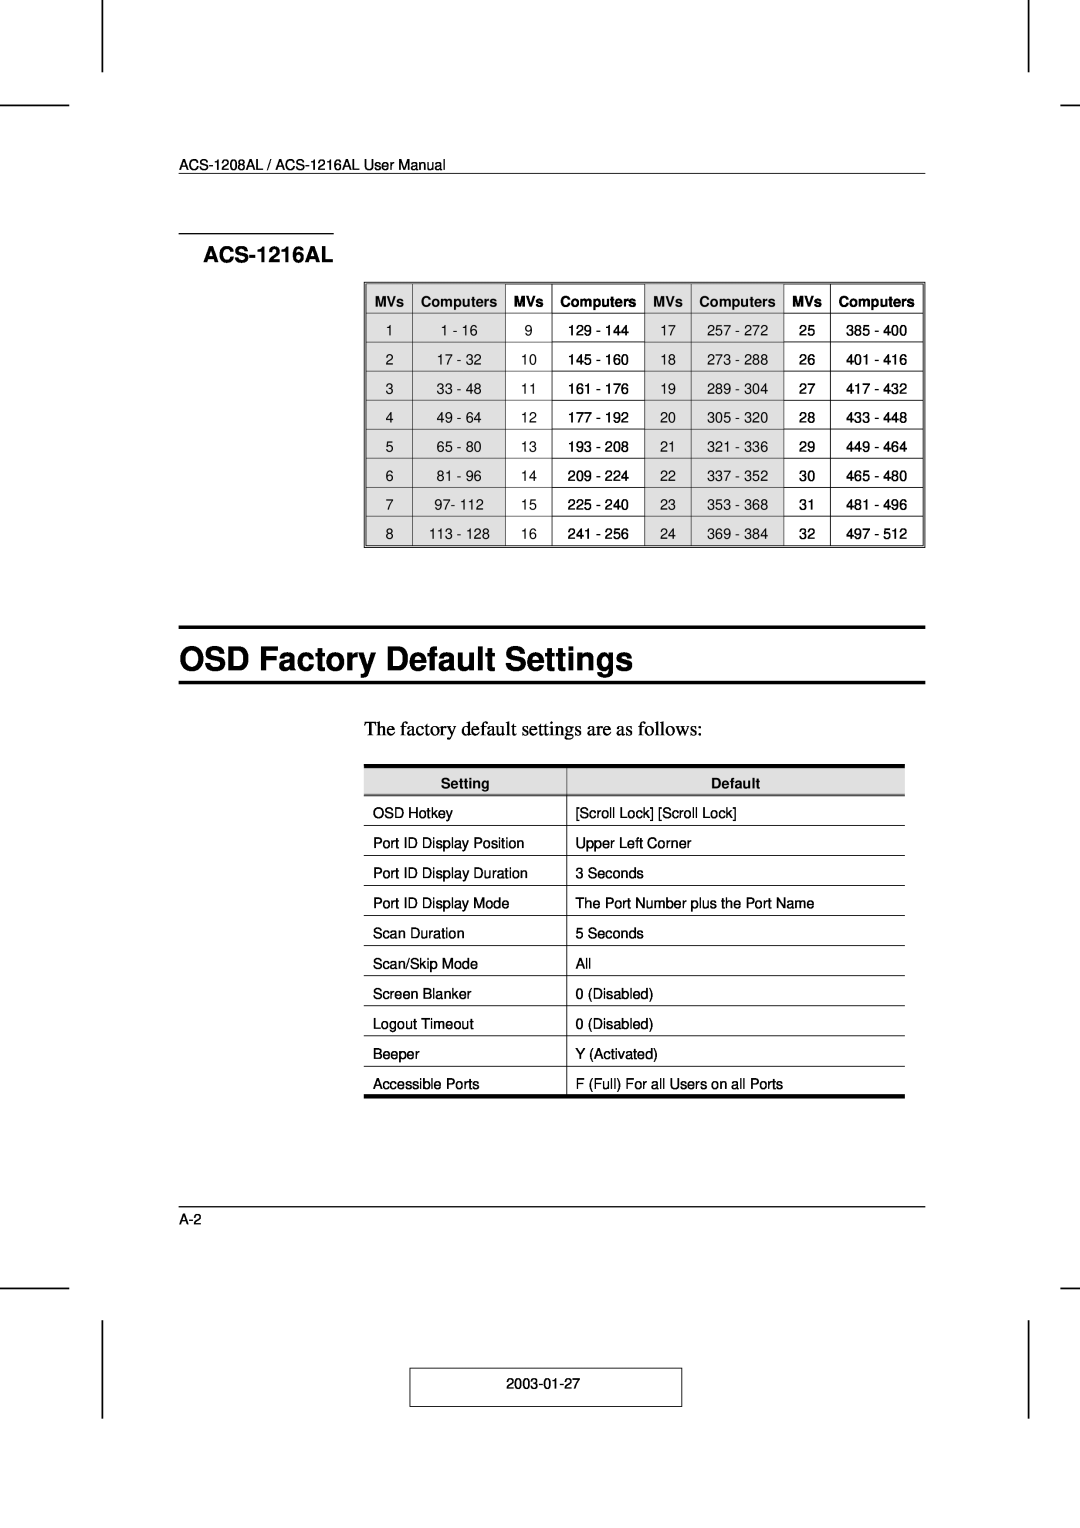 ATEN Technology ACS-1208AL user manual OSD Factory Default Settings, ACS-1216AL, Computers 